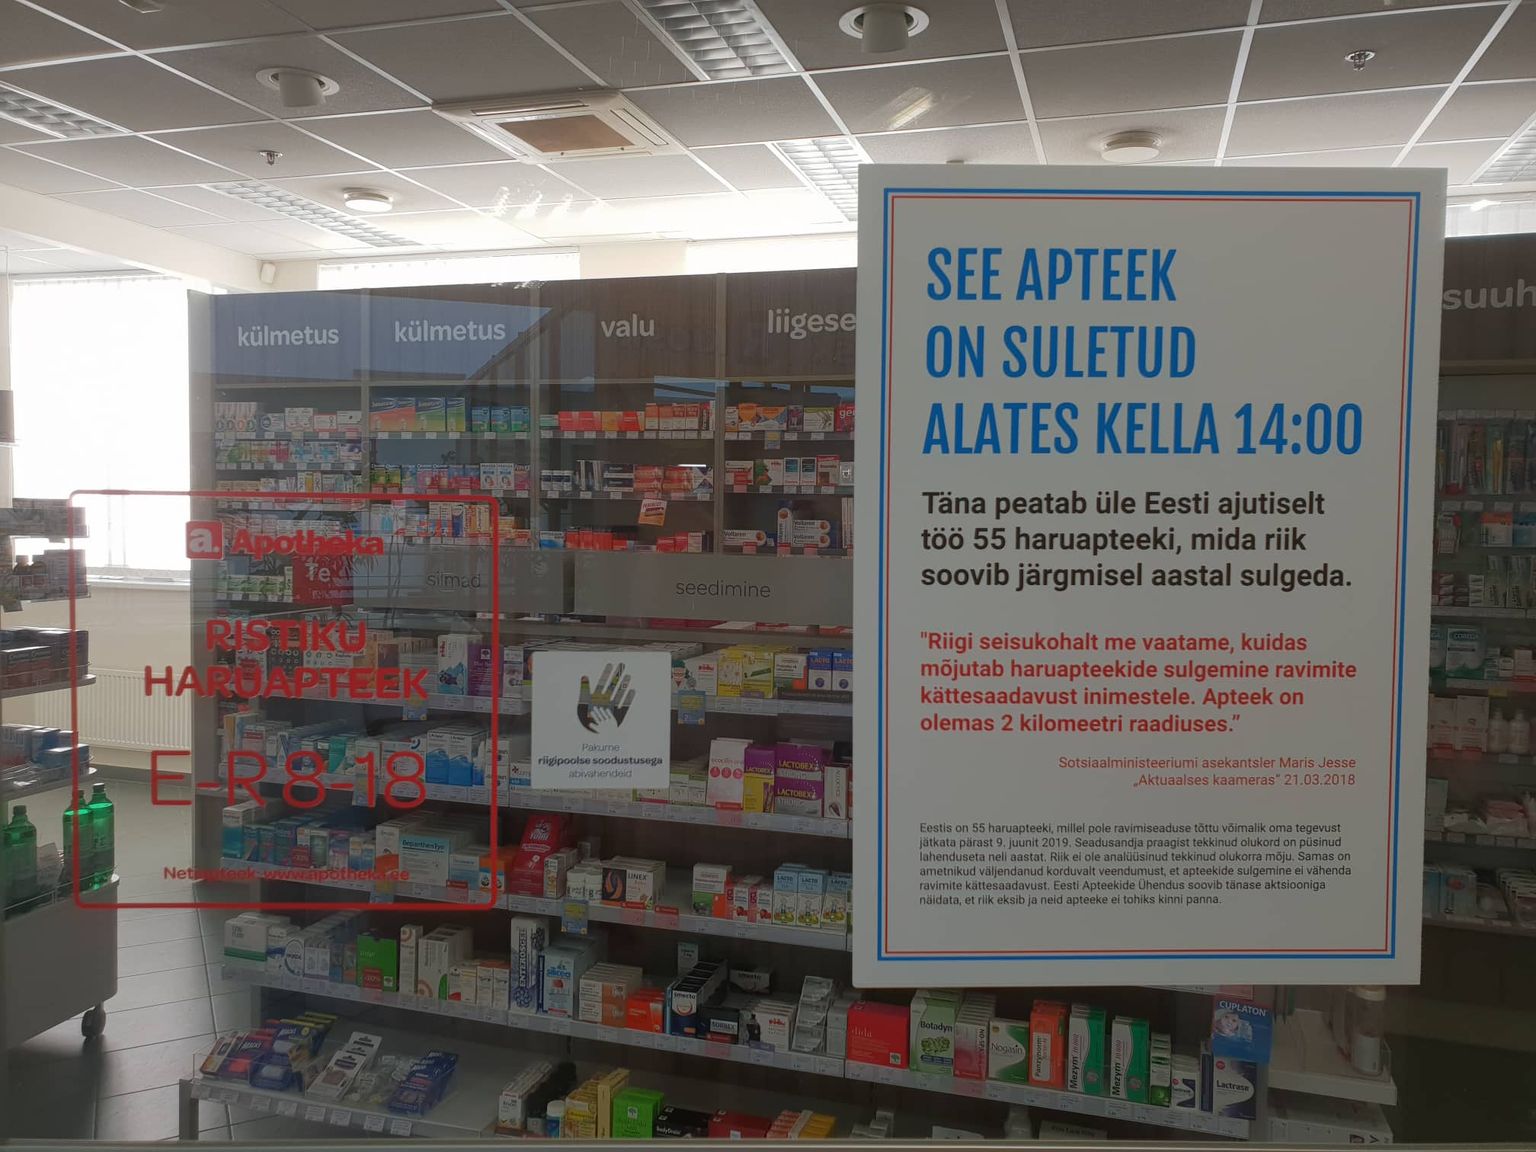 Pärnu haigla apteek oli seoses protestiüritusega suletud.